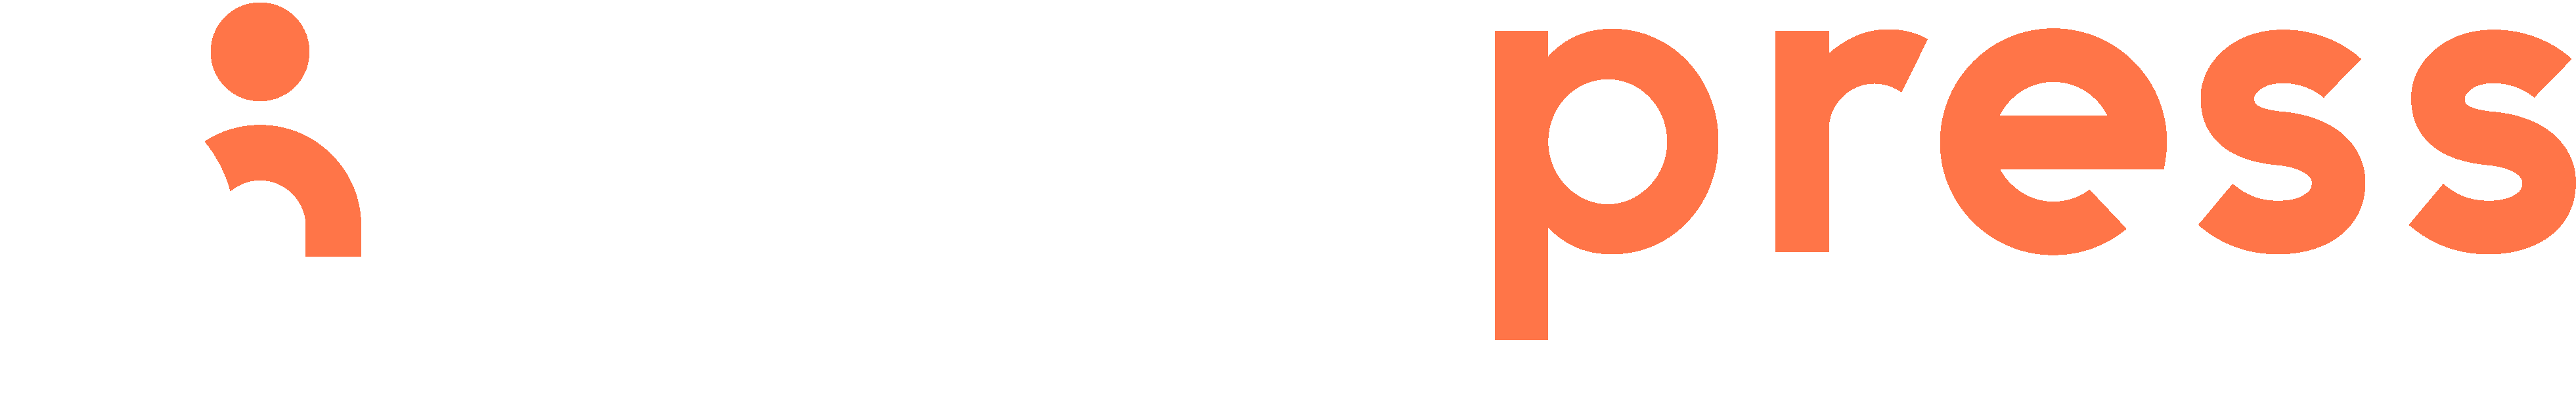 MGAPress completa 5 anos e apresenta nova identidade de marca